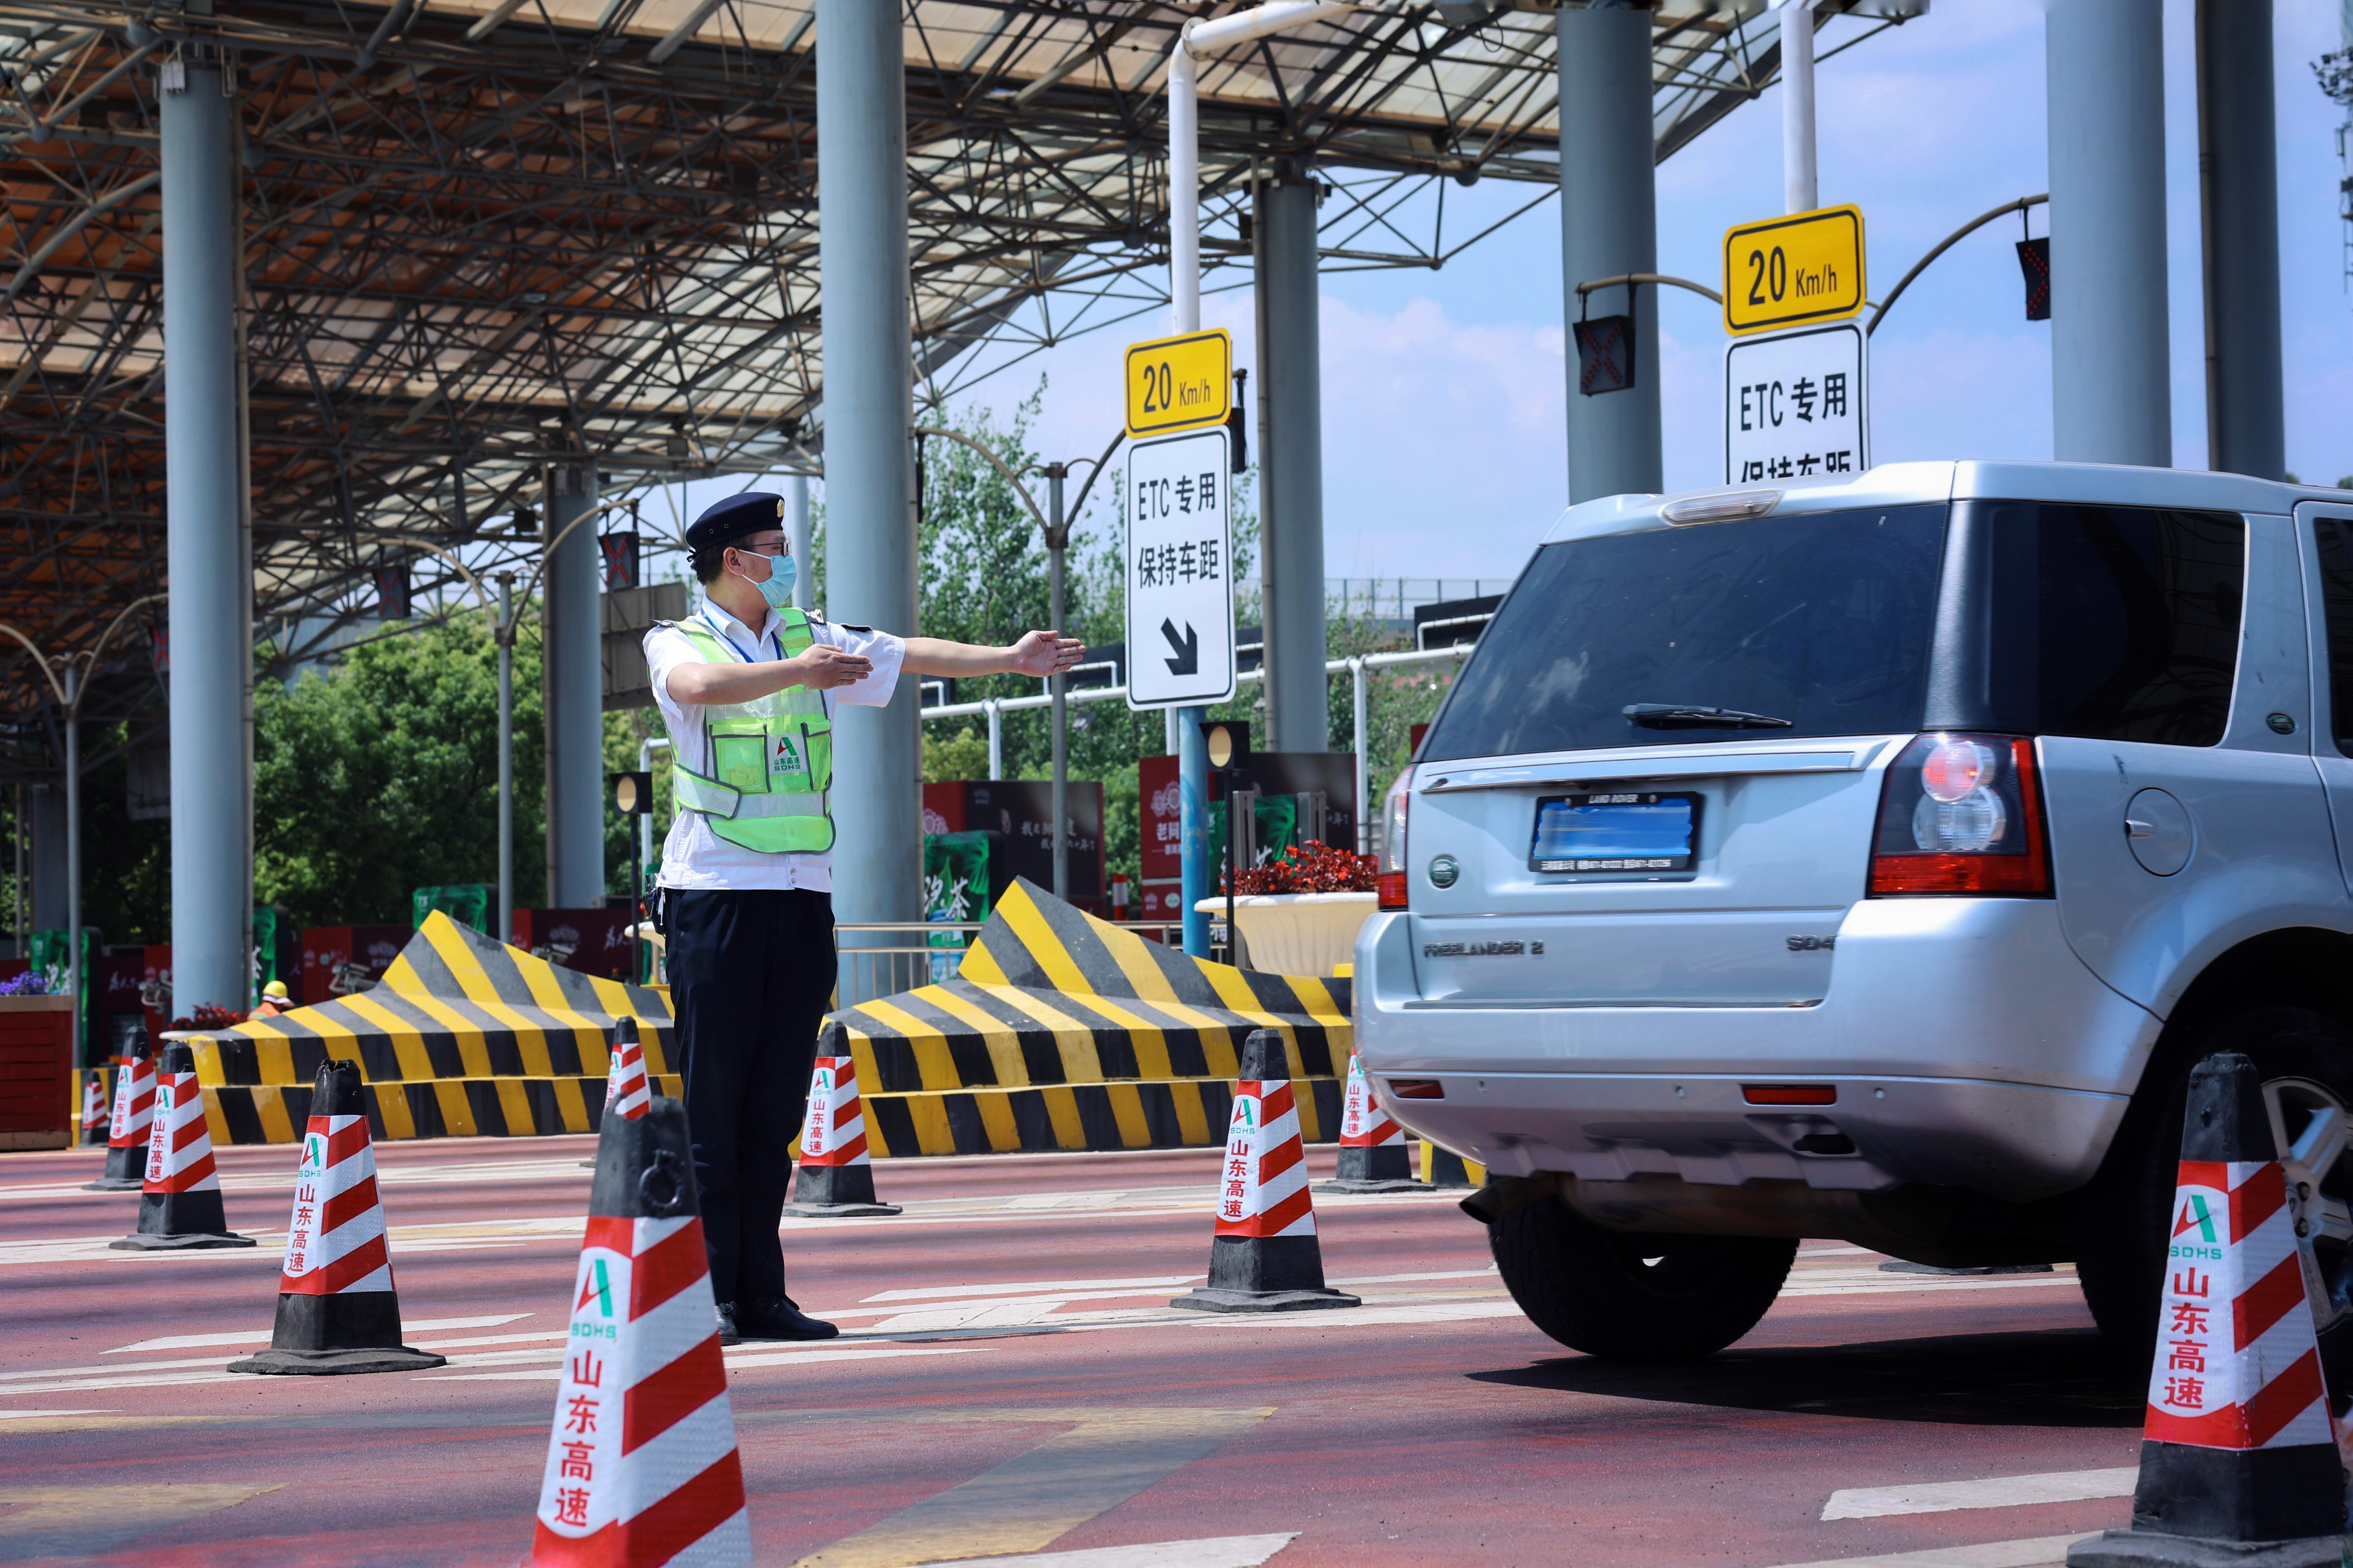 山东高速云南发展公司昆明新机场高速公司收费员及时疏导车辆，确保车辆快速便捷通过.jpg